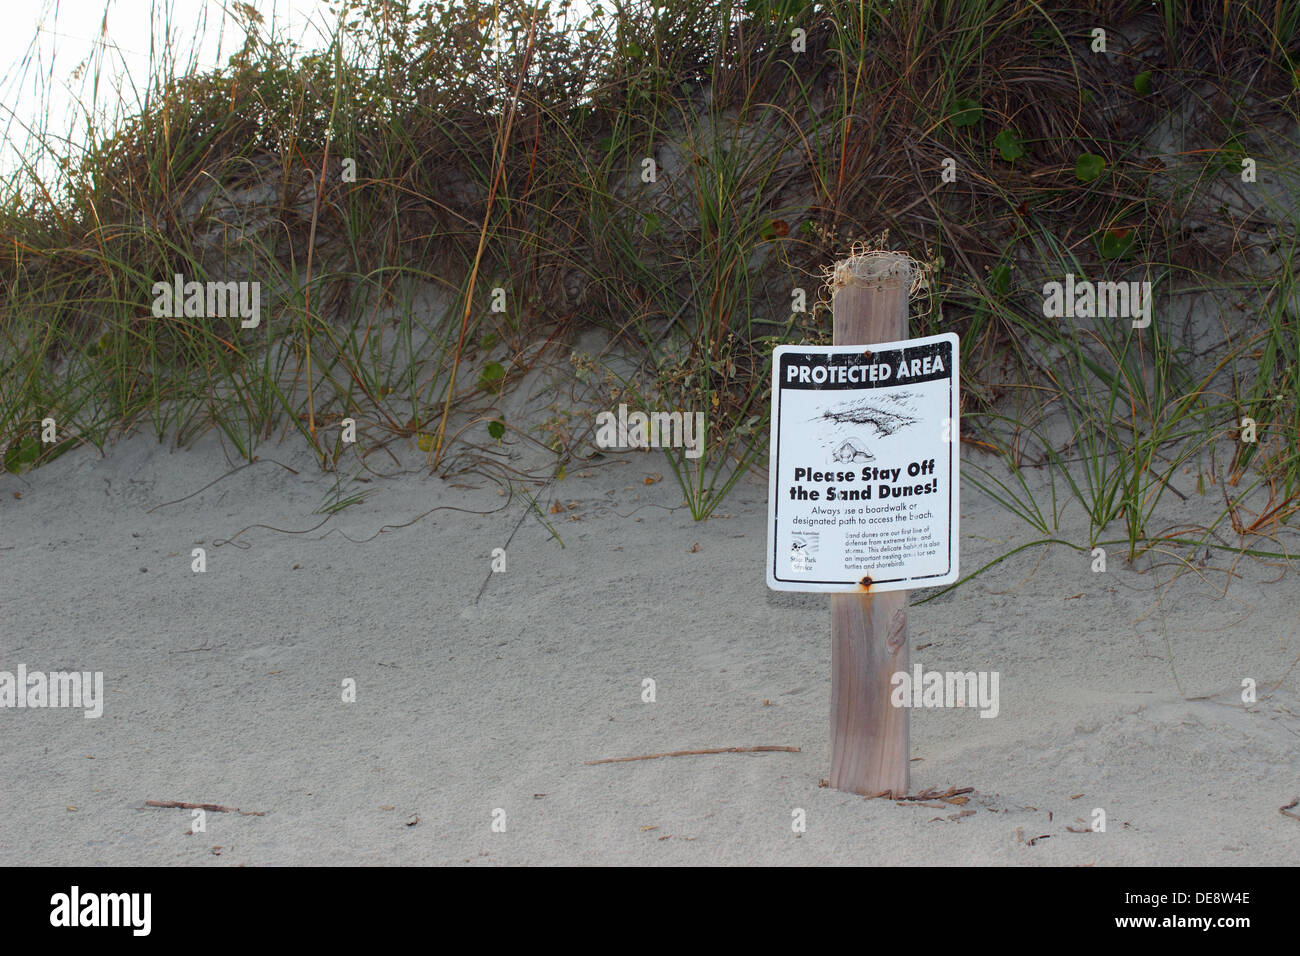 Ein Teil der Strand Düne zum Schutz der nistenden Meeresschildkröten birds.and abgesperrt. Stockfoto